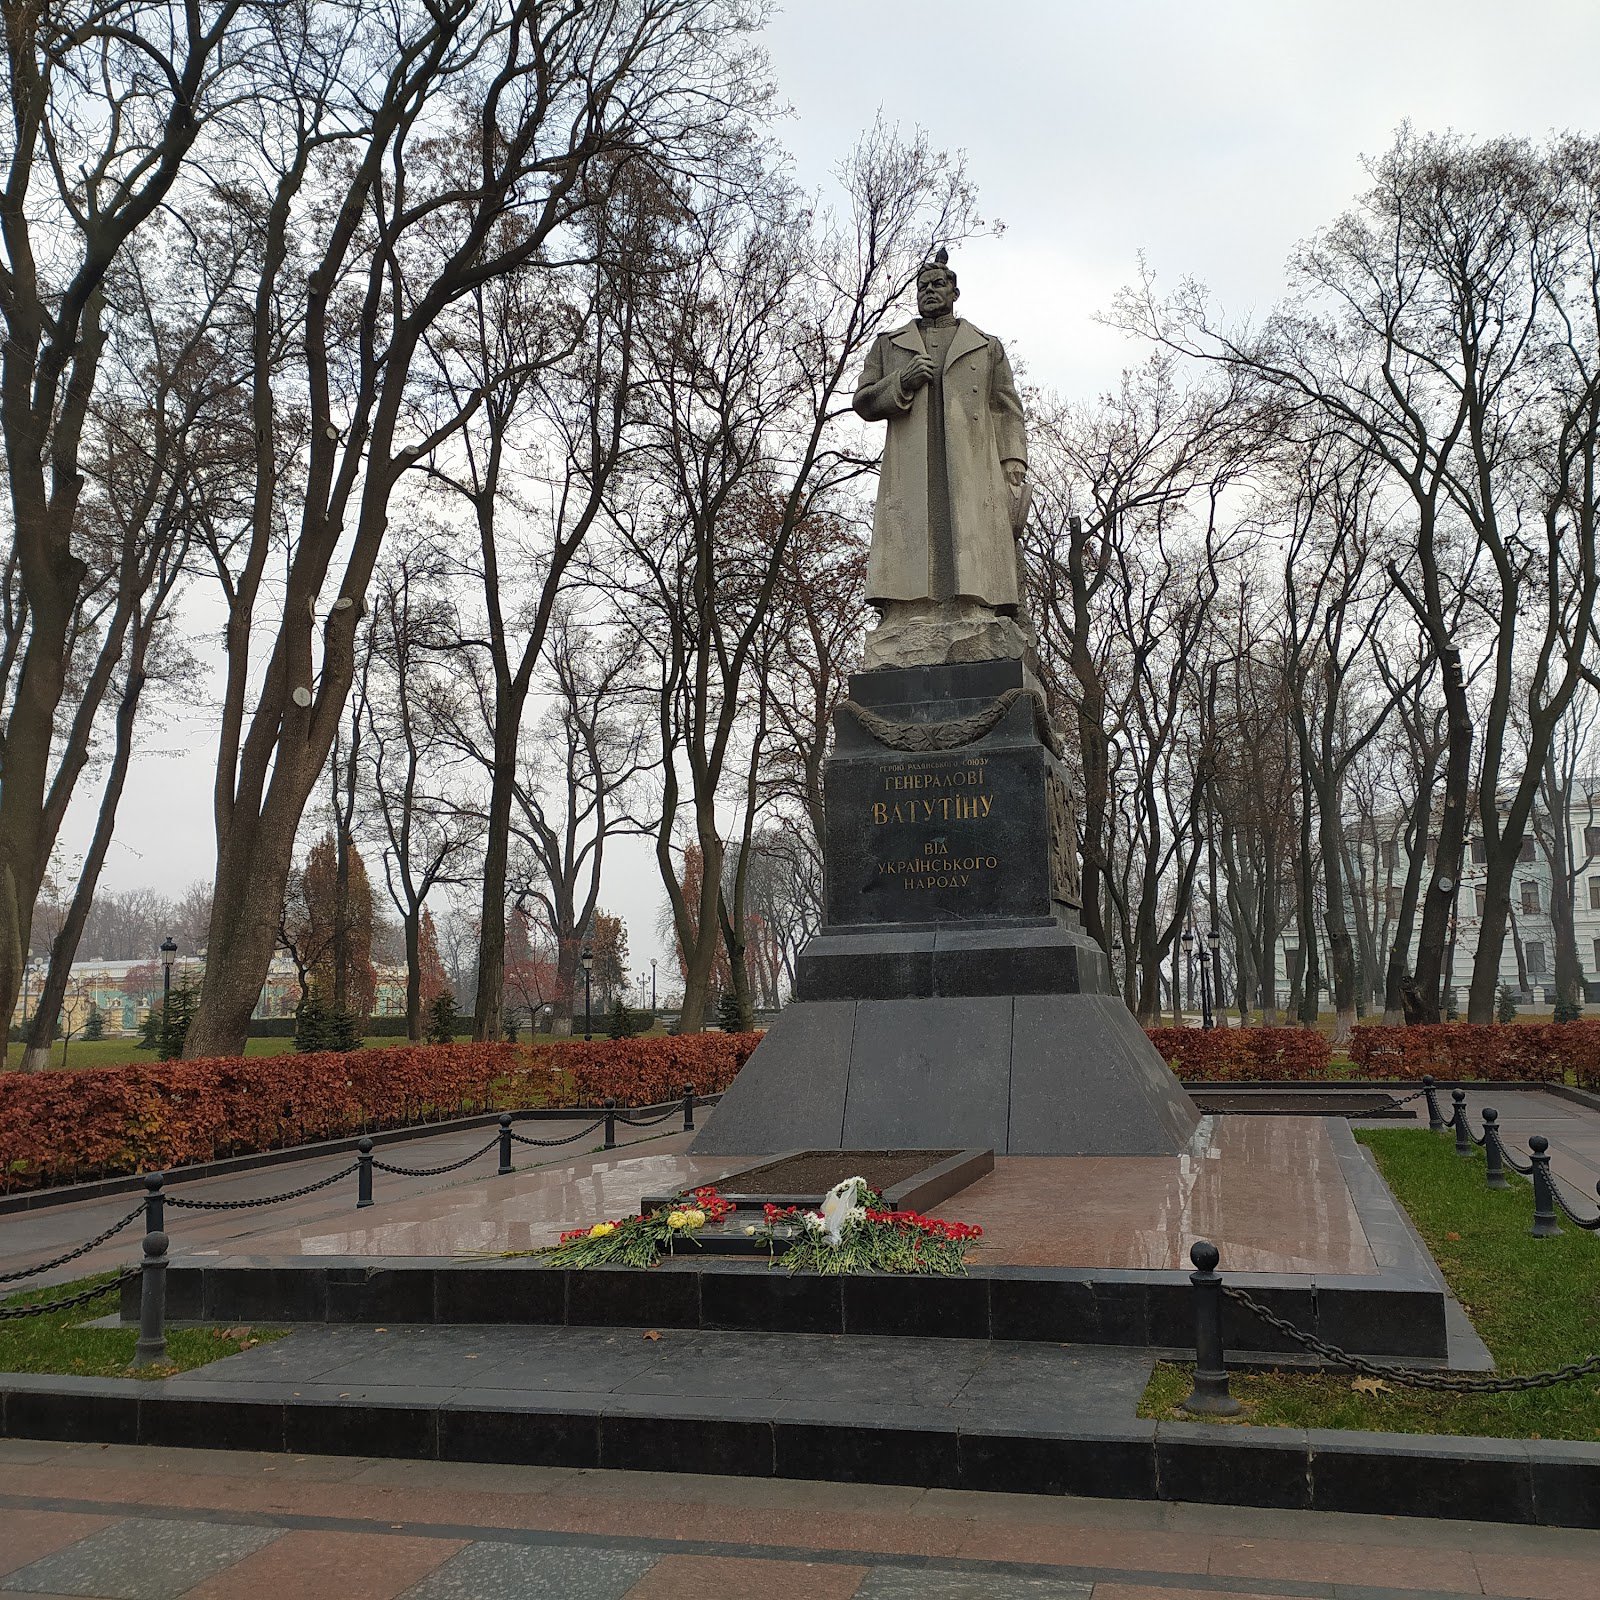 Пам’ятник Миколі Ватутіну стоїть за сто метрів від Верховної Ради України. «Вірний син більшовицької партії», — написано на меморіальній табличці в підніжжя. Досі є прихильники, які покладають йому квіти